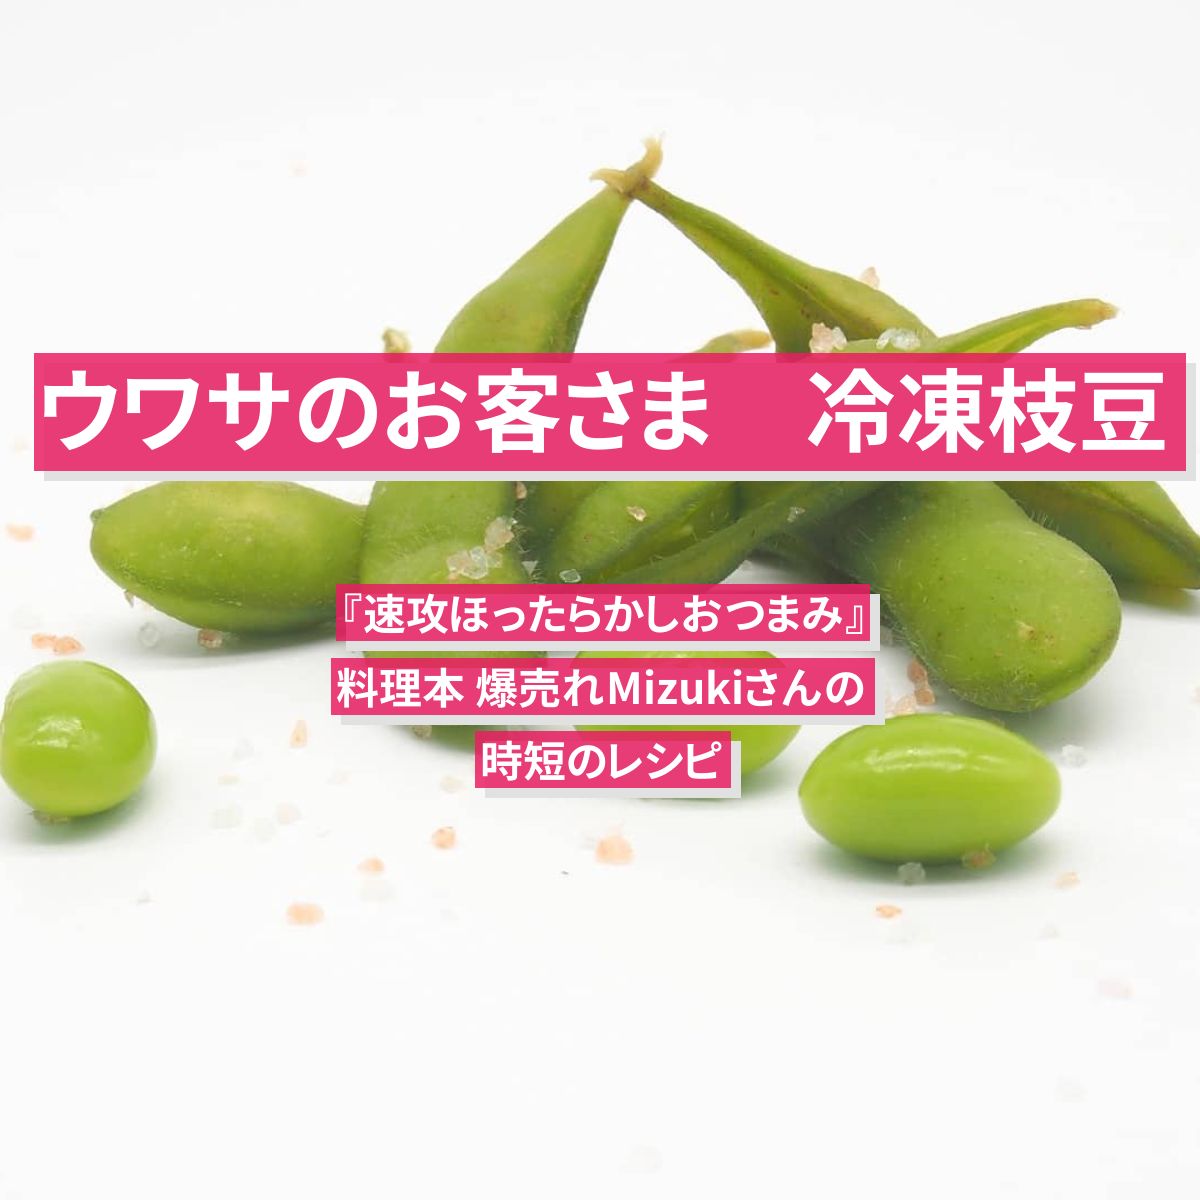 【ウワサのお客さま】冷凍枝豆で『速攻ほったらかしおつまみ』料理本 爆売れMizukiさんの時短のレシピ